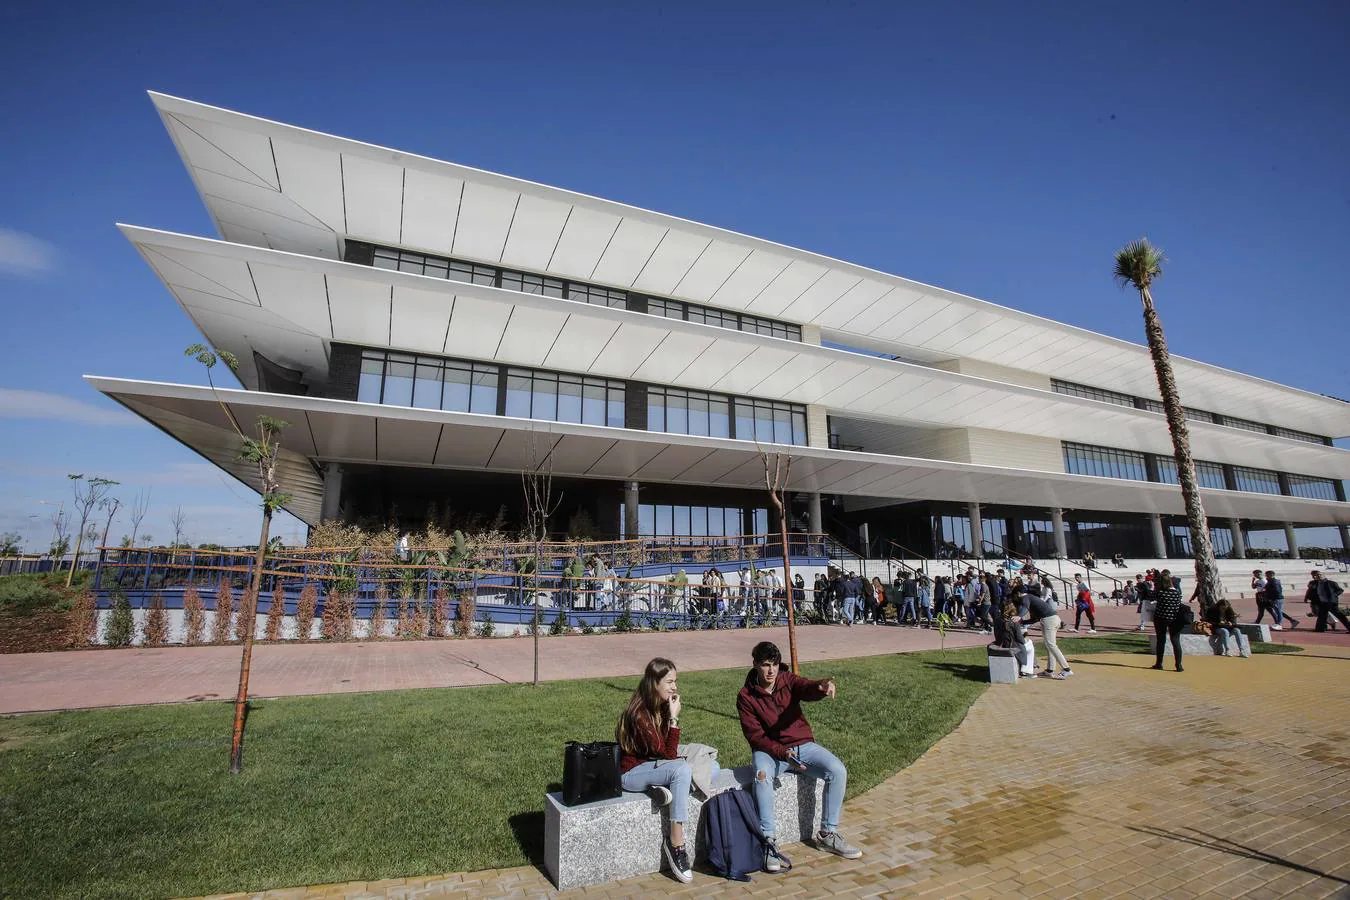 El nuevo campus de la Universidad de Loyola Andalucía, en imágenes